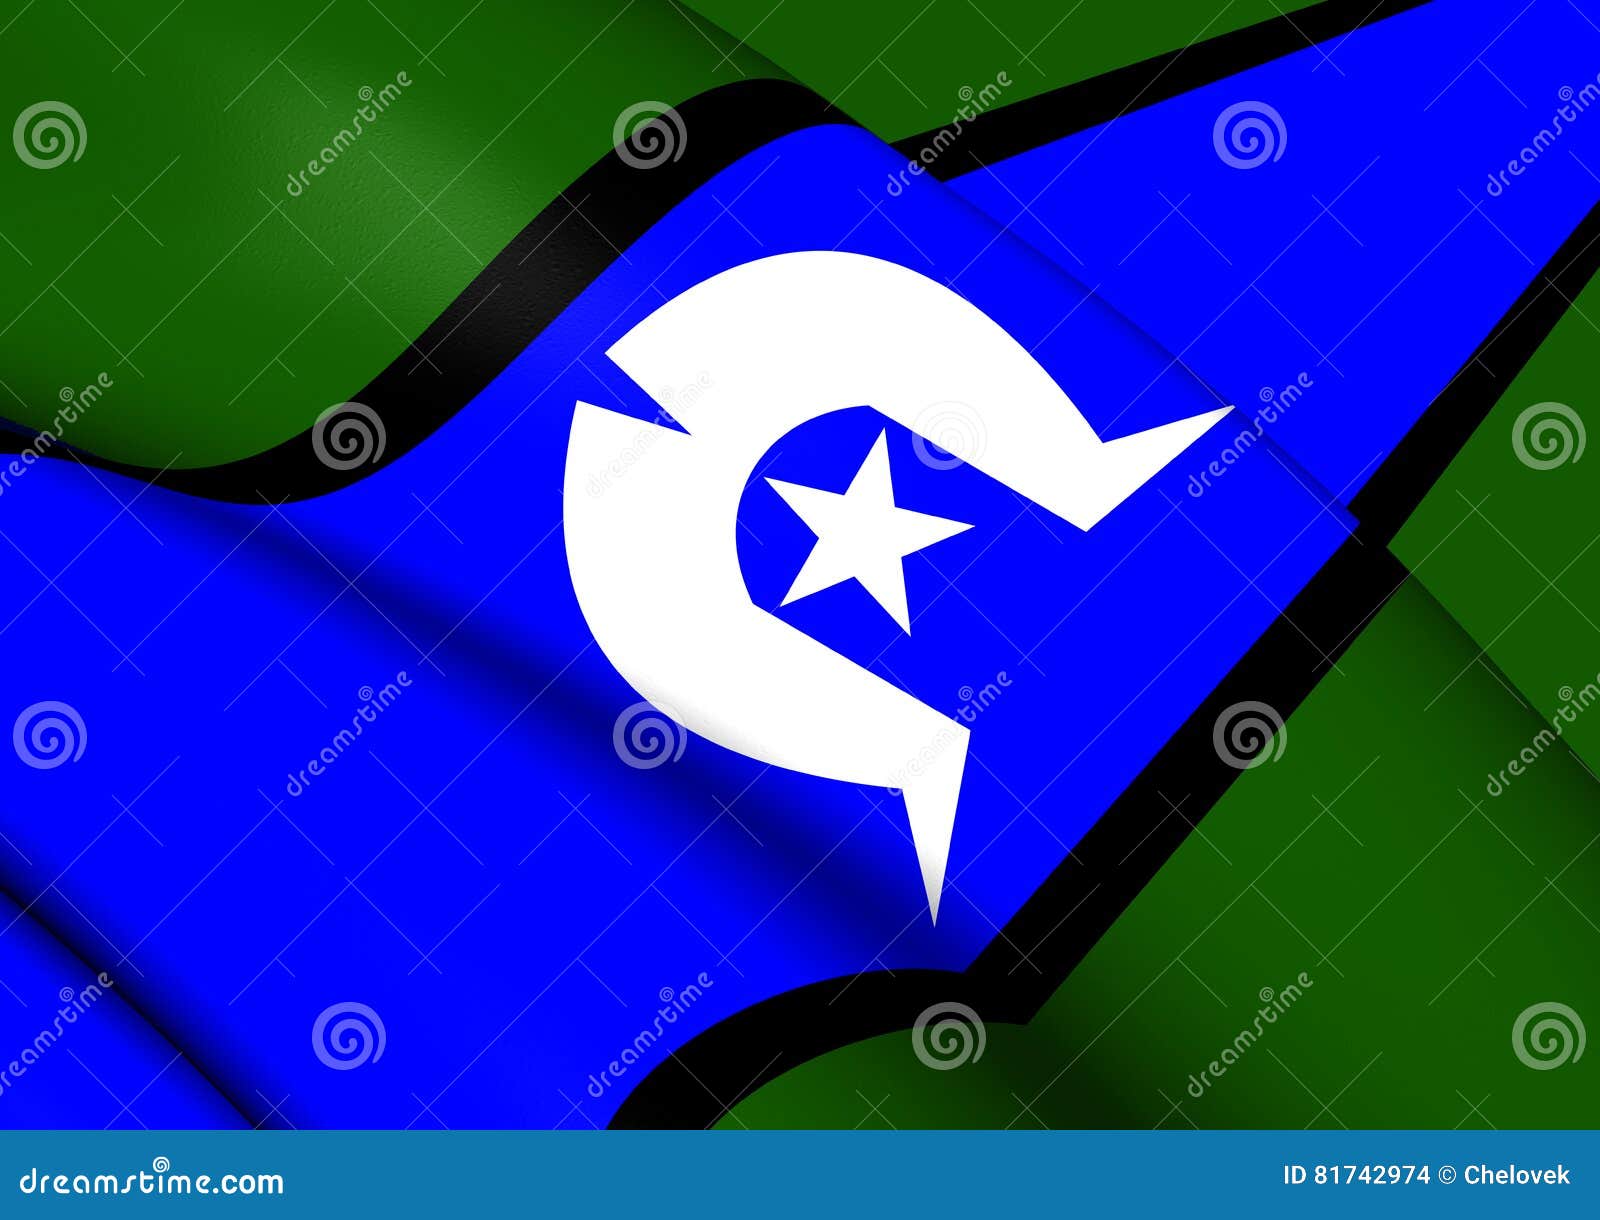 flag of torres strait islanders